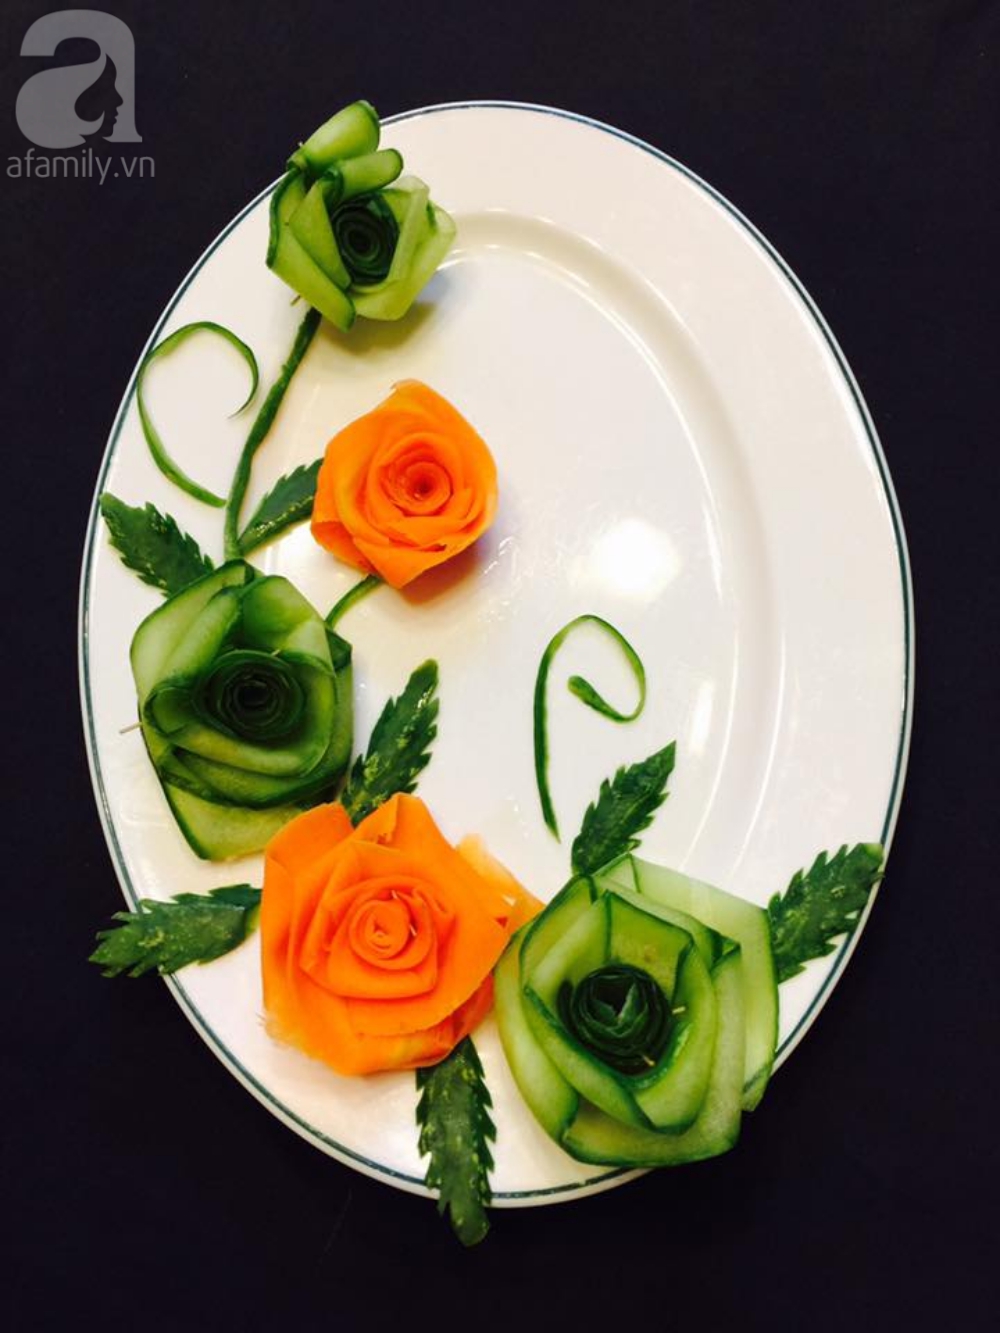 5 cách trang trí đĩa ăn siêu đẹp theo chủ đề hoa lá